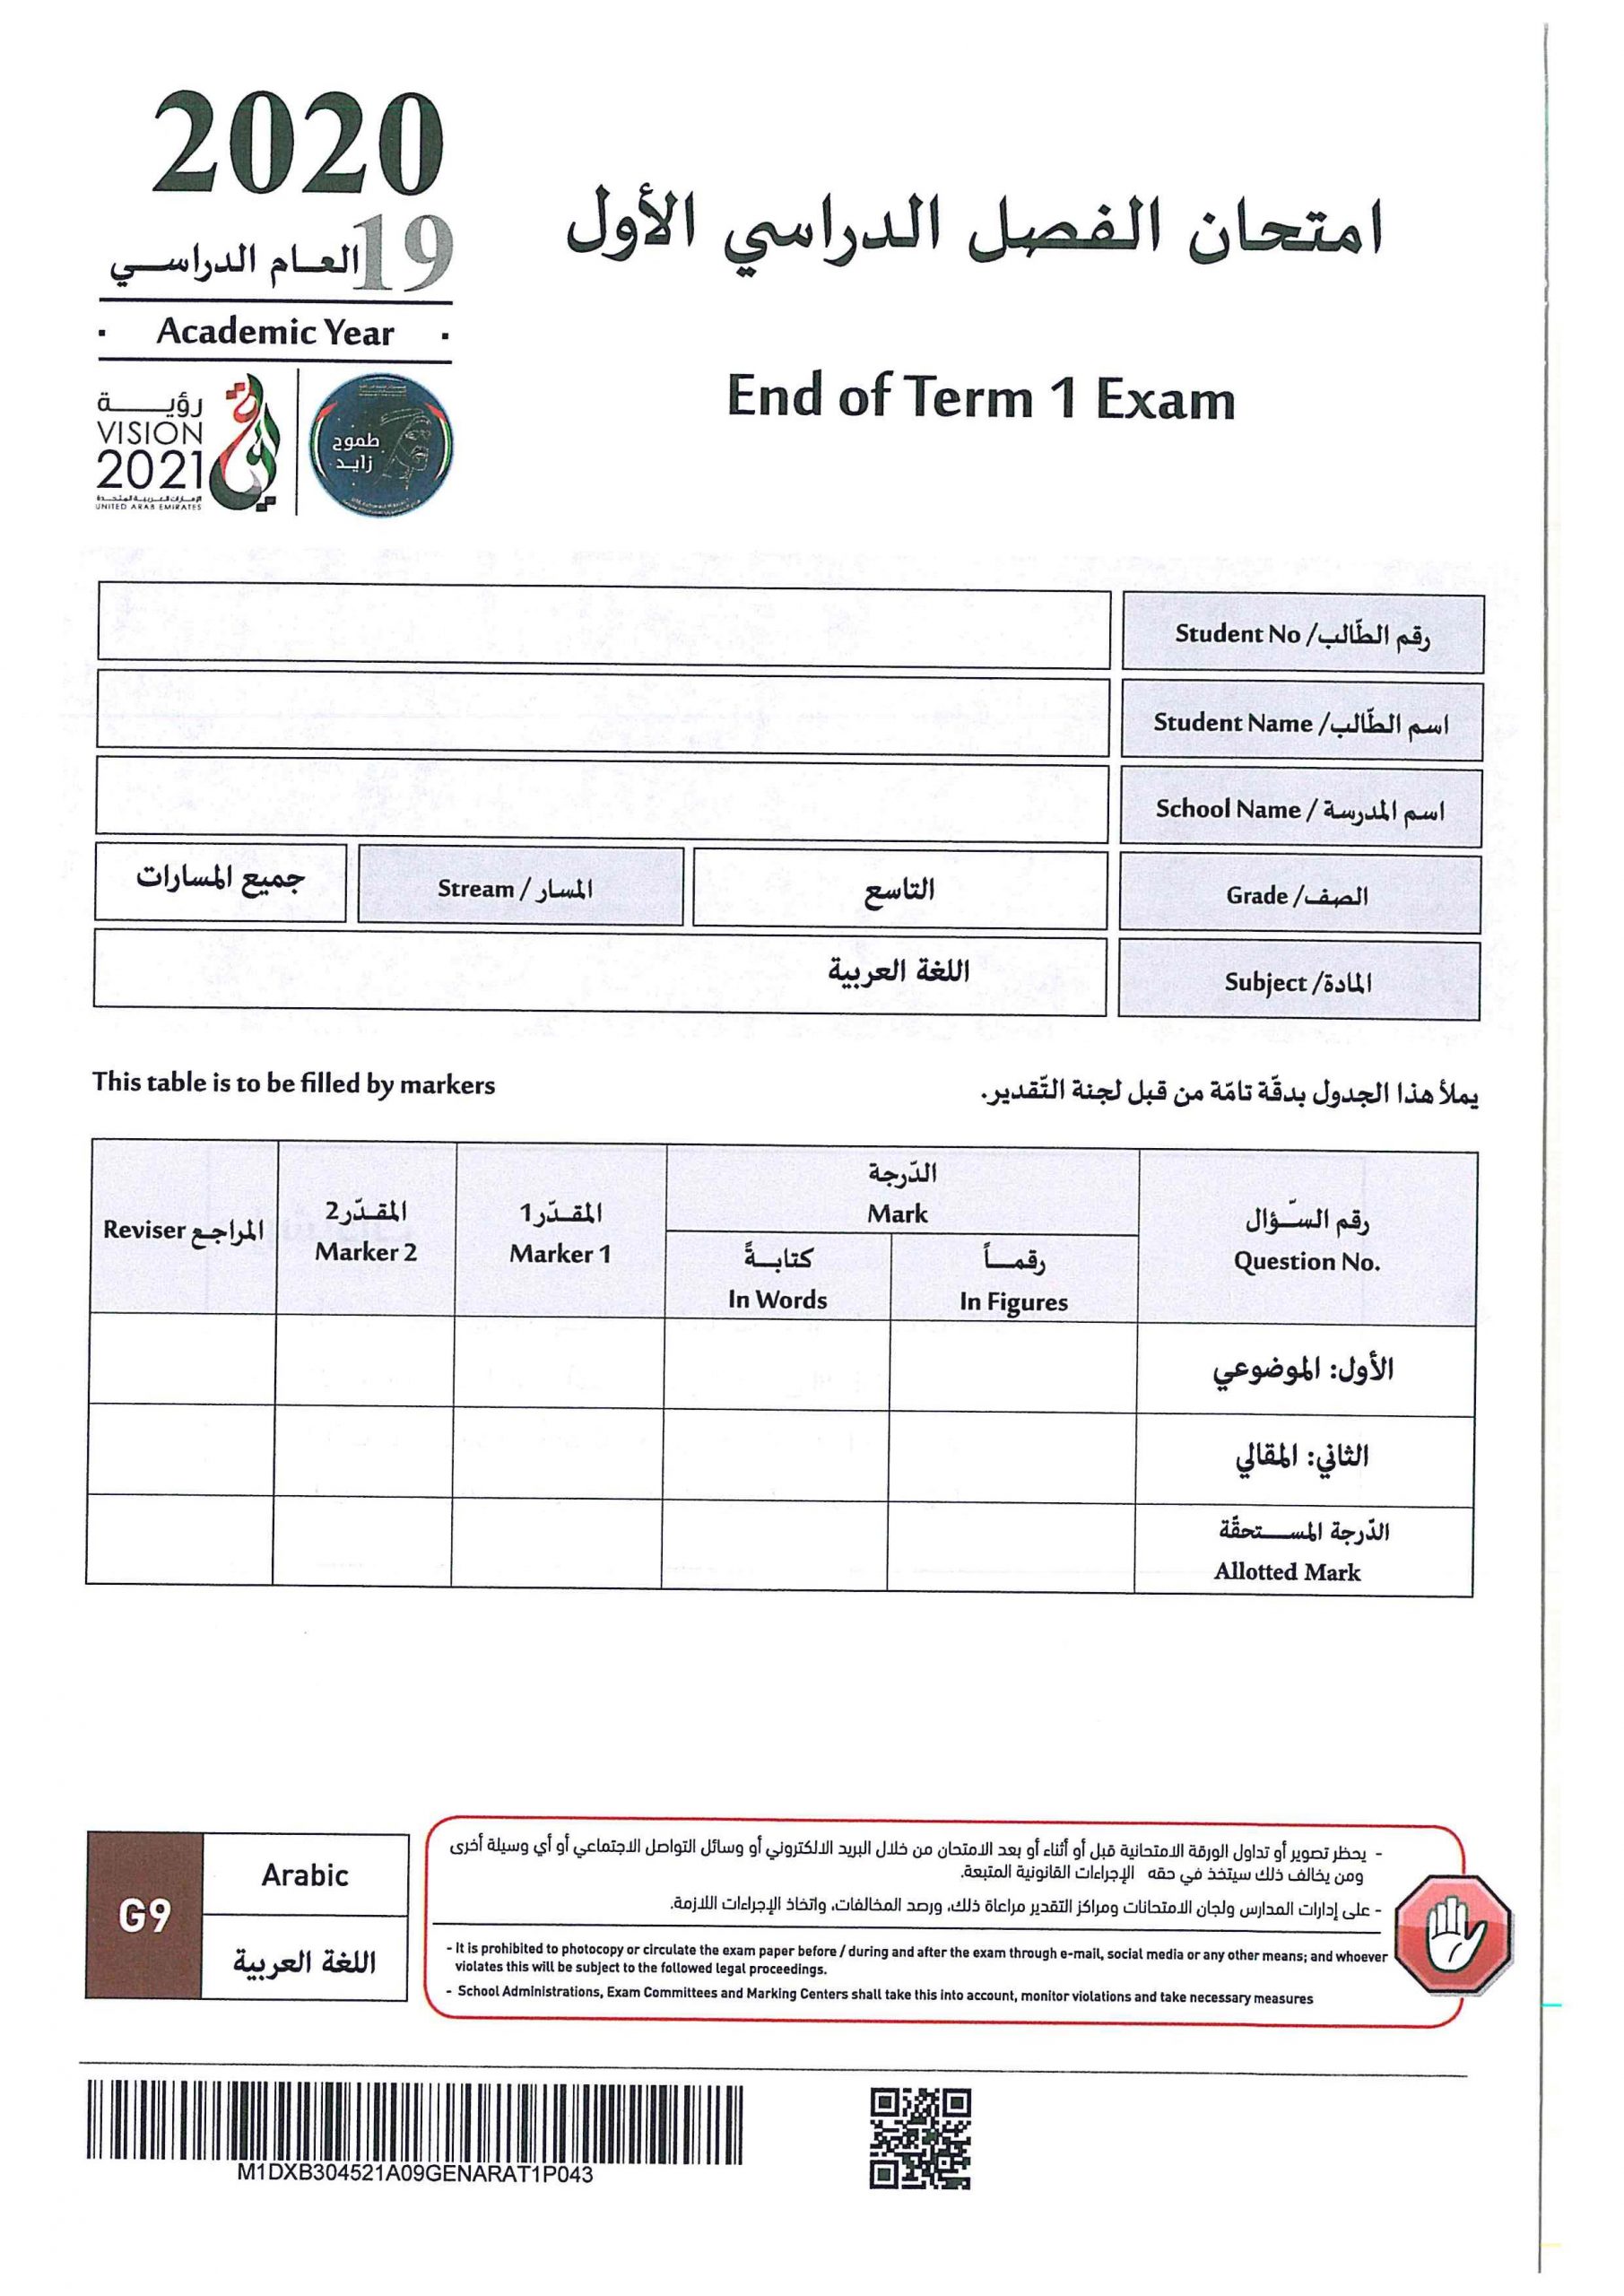 امتحان نهاية الفصل الدراسي الاول 2019-2020 الصف التاسع مادة اللغة العربية